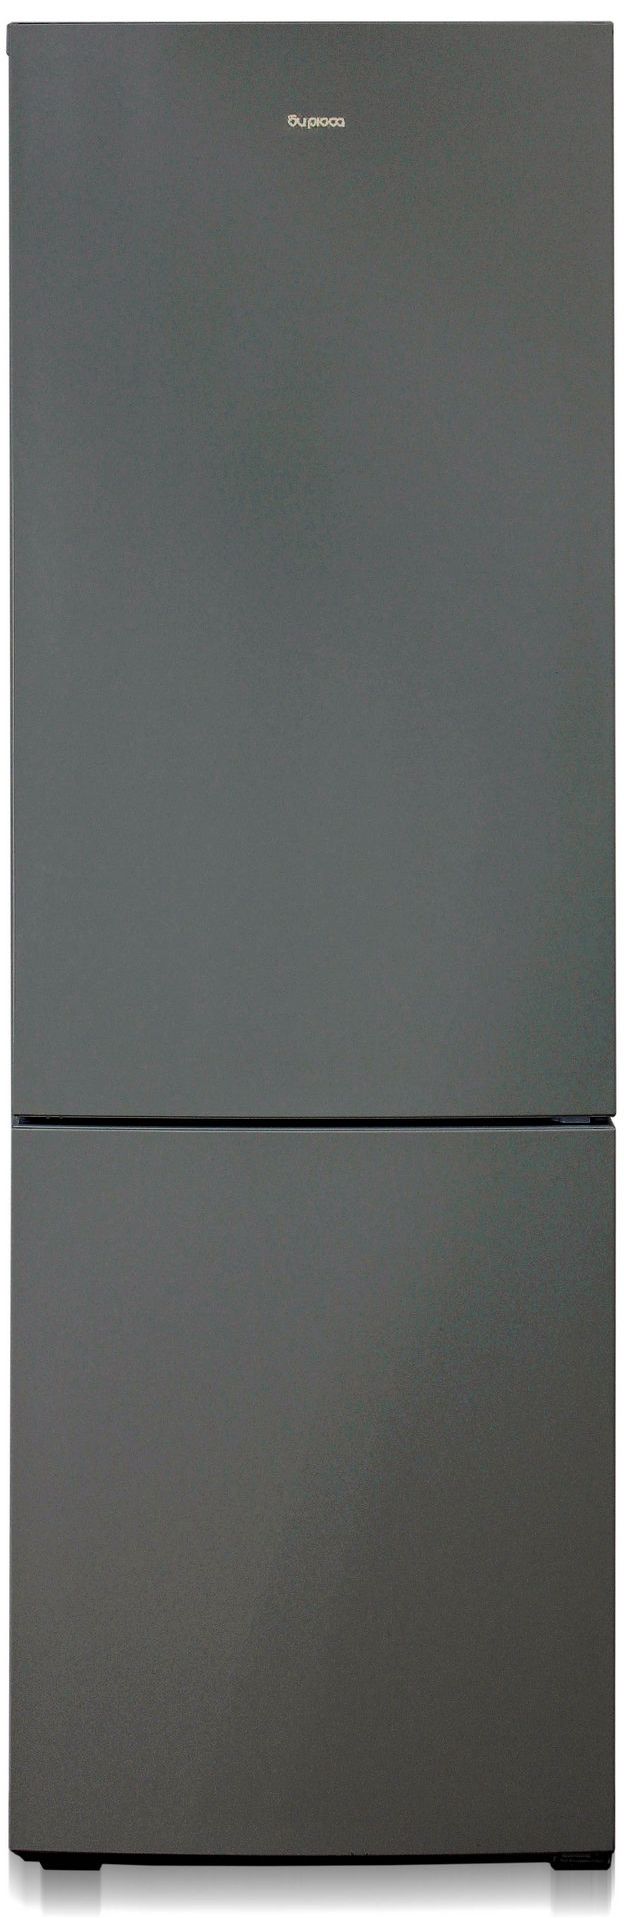 холодильник бирюса 6027, купить в Красноярске холодильник бирюса 6027,  купить в Красноярске дешево холодильник бирюса 6027, купить в Красноярске минимальной цене холодильник бирюса 6027